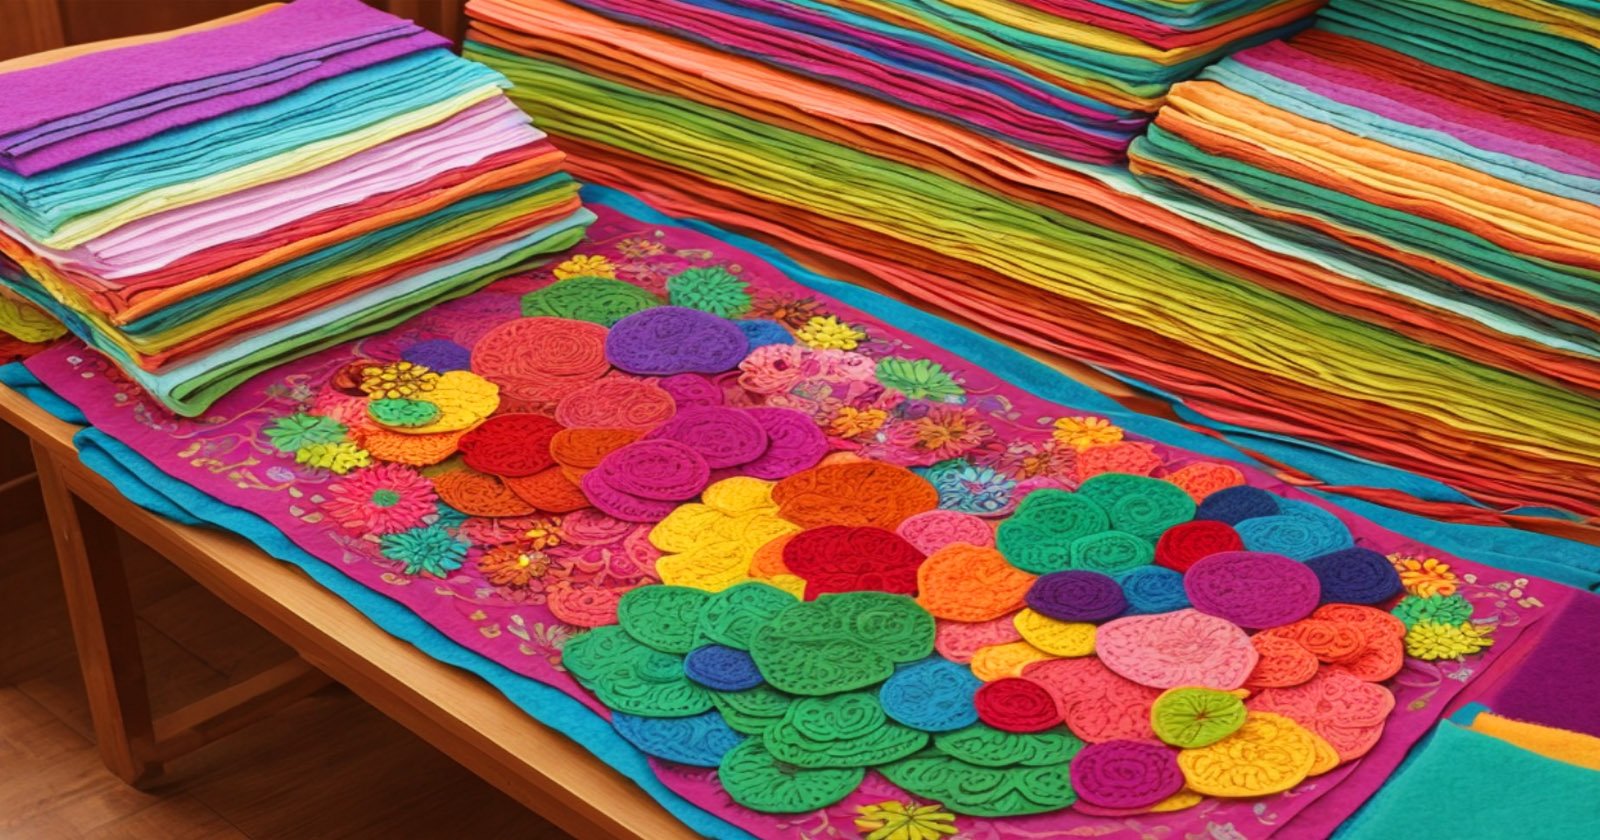 5 segredos sobre cores e texturas do feltro que irão revolucionar suas criações